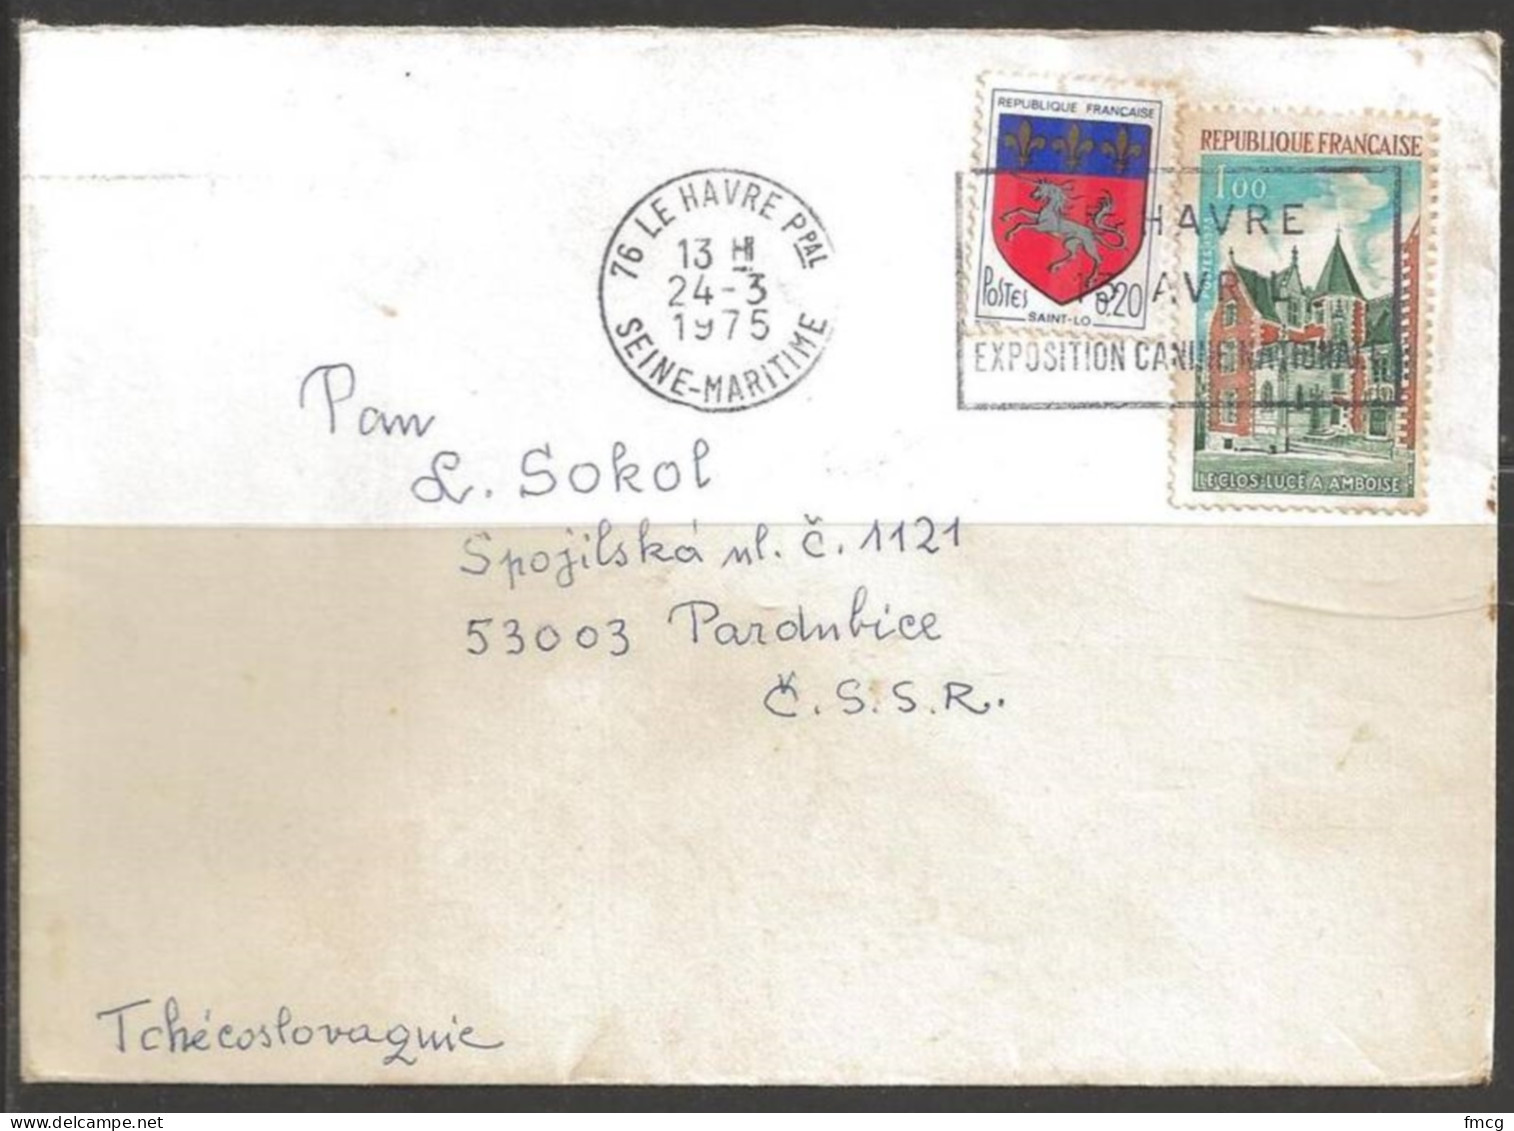  1977 1.00fr Clos-Luce, Amboise, LeHavre (24-3-1975) To Czechoslovakia. - Lettres & Documents